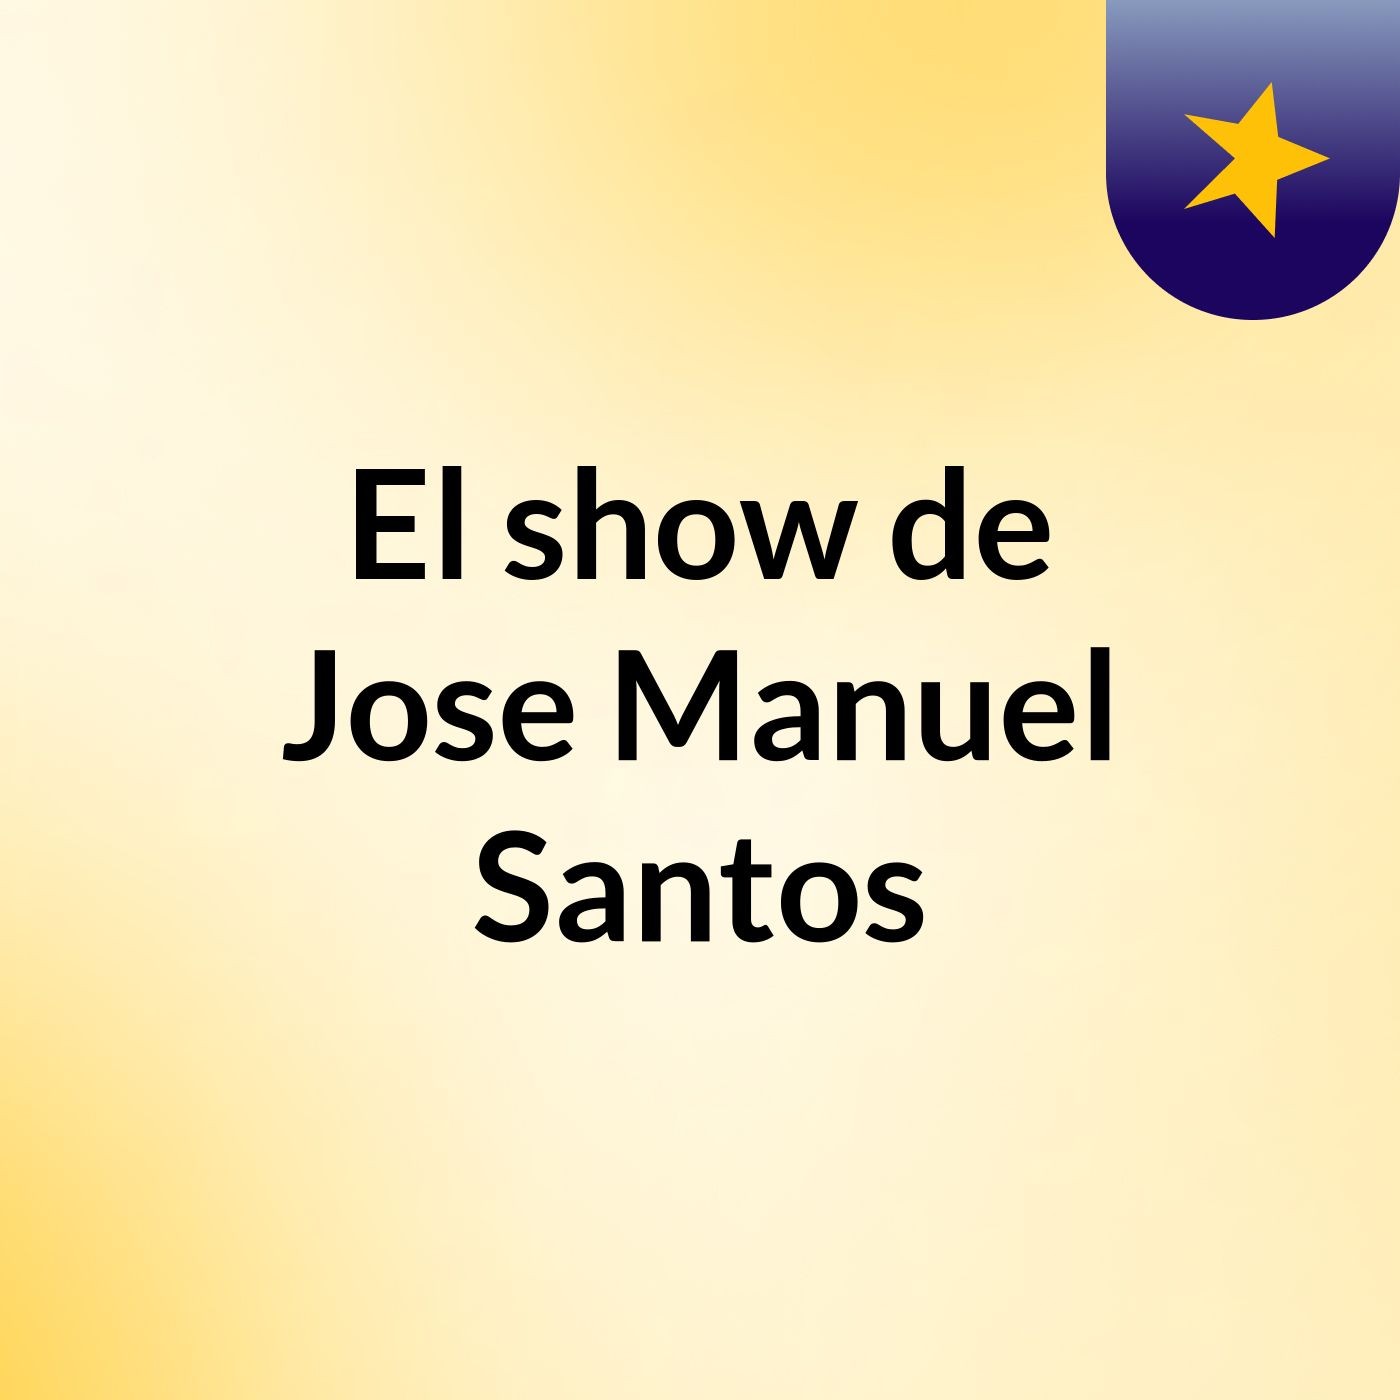 El show de Jose Manuel Santos